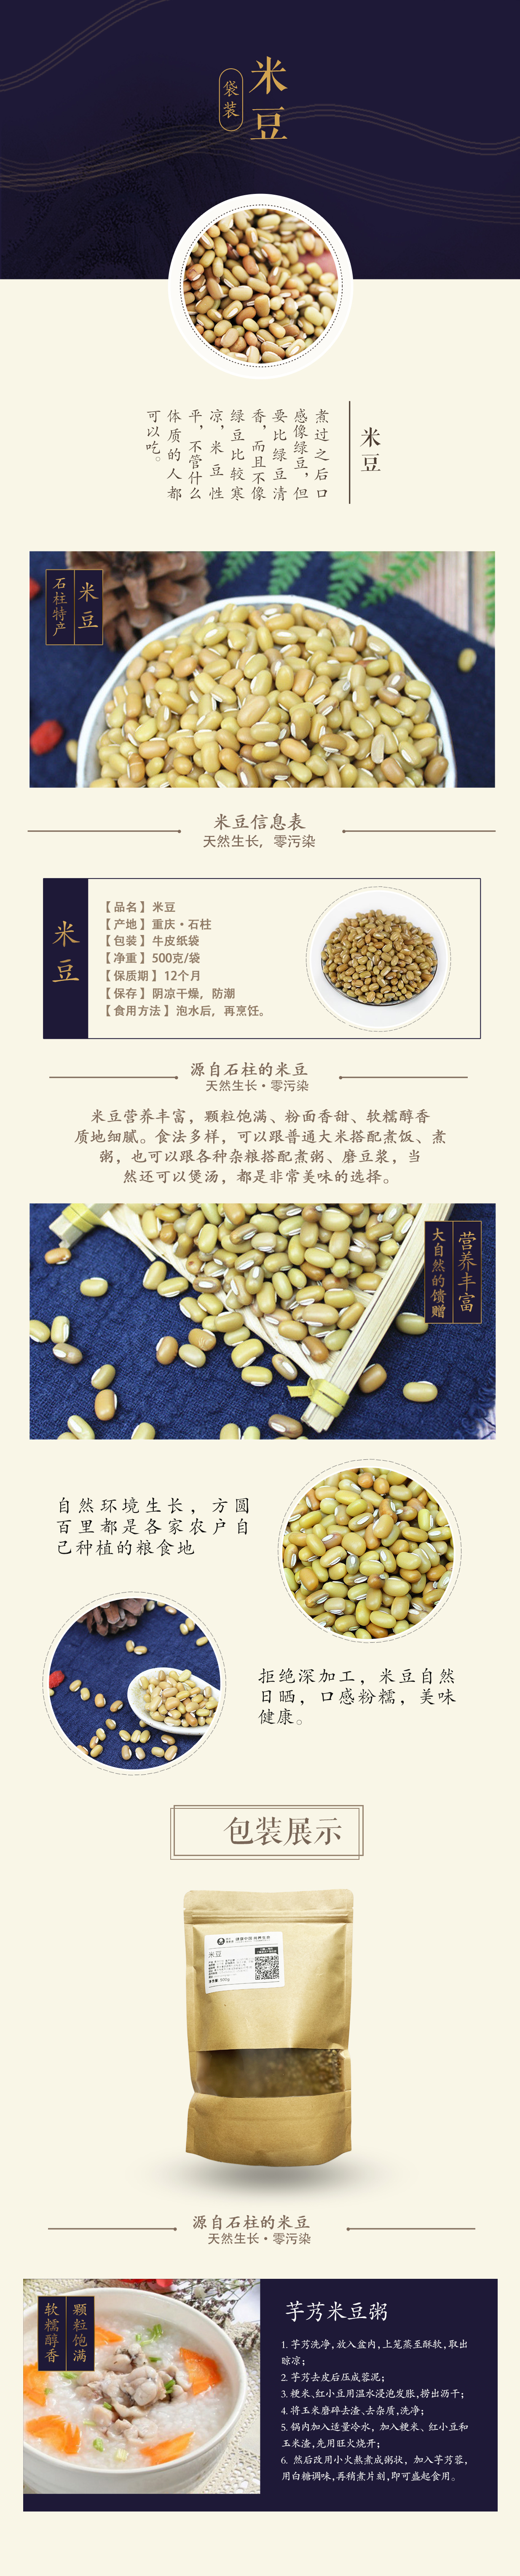 【石柱特产】重庆潘婆婆石柱农家米豆饭豆 500g/袋